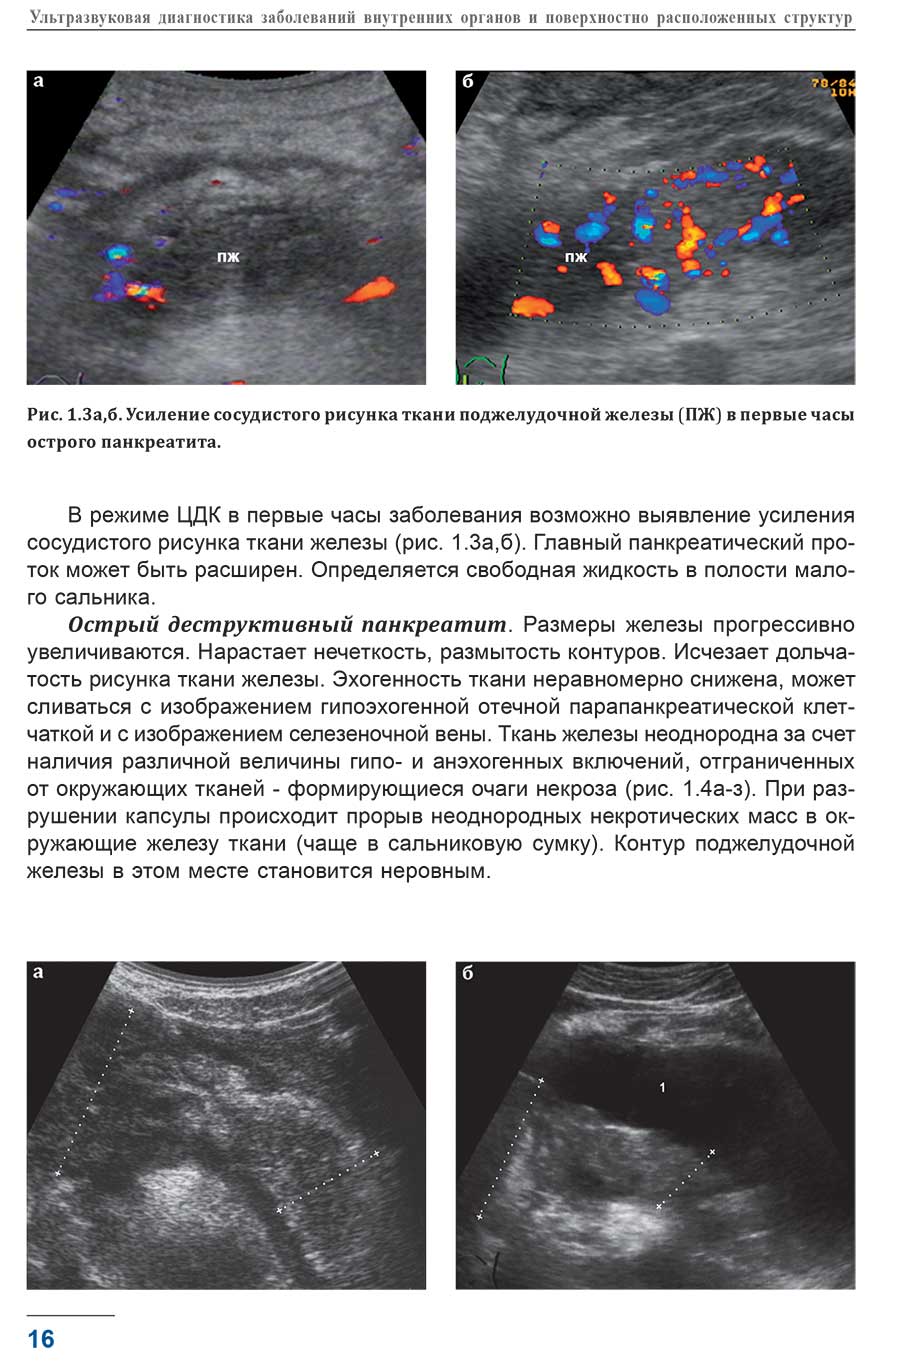 Рис. 1.3а, б. Усиление сосудистого рисунка ткани поджелудочной железы (ПЖ) в первые часы острого панкреатита